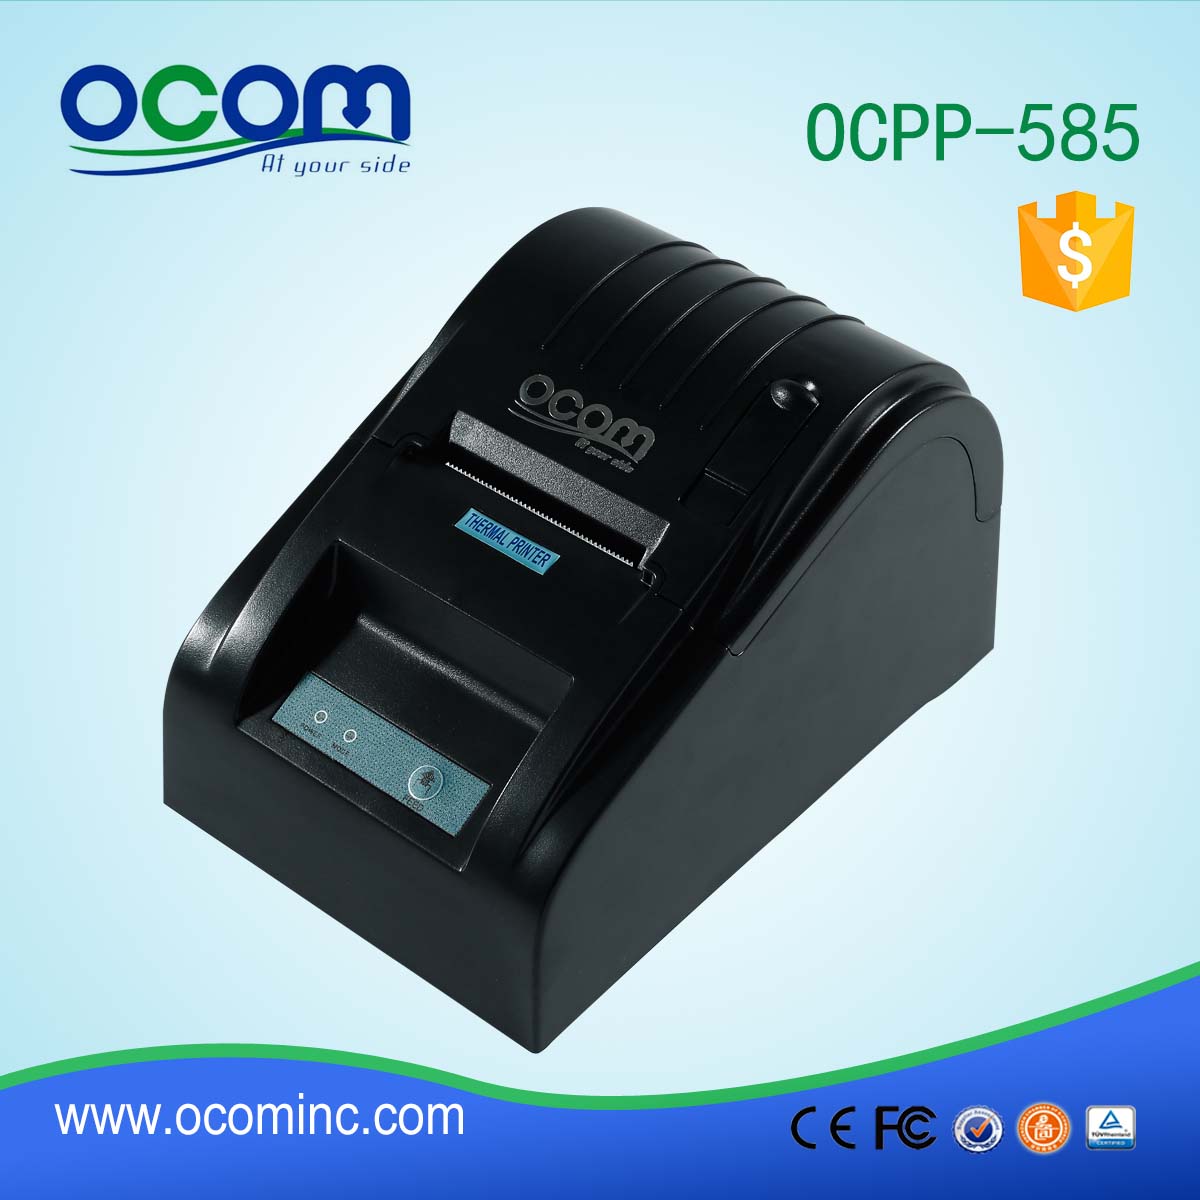 OCPP-585-P Самый дешевый 58-мм высококачественный POS-термопринтер стоимостью 17 долларов США за штуку